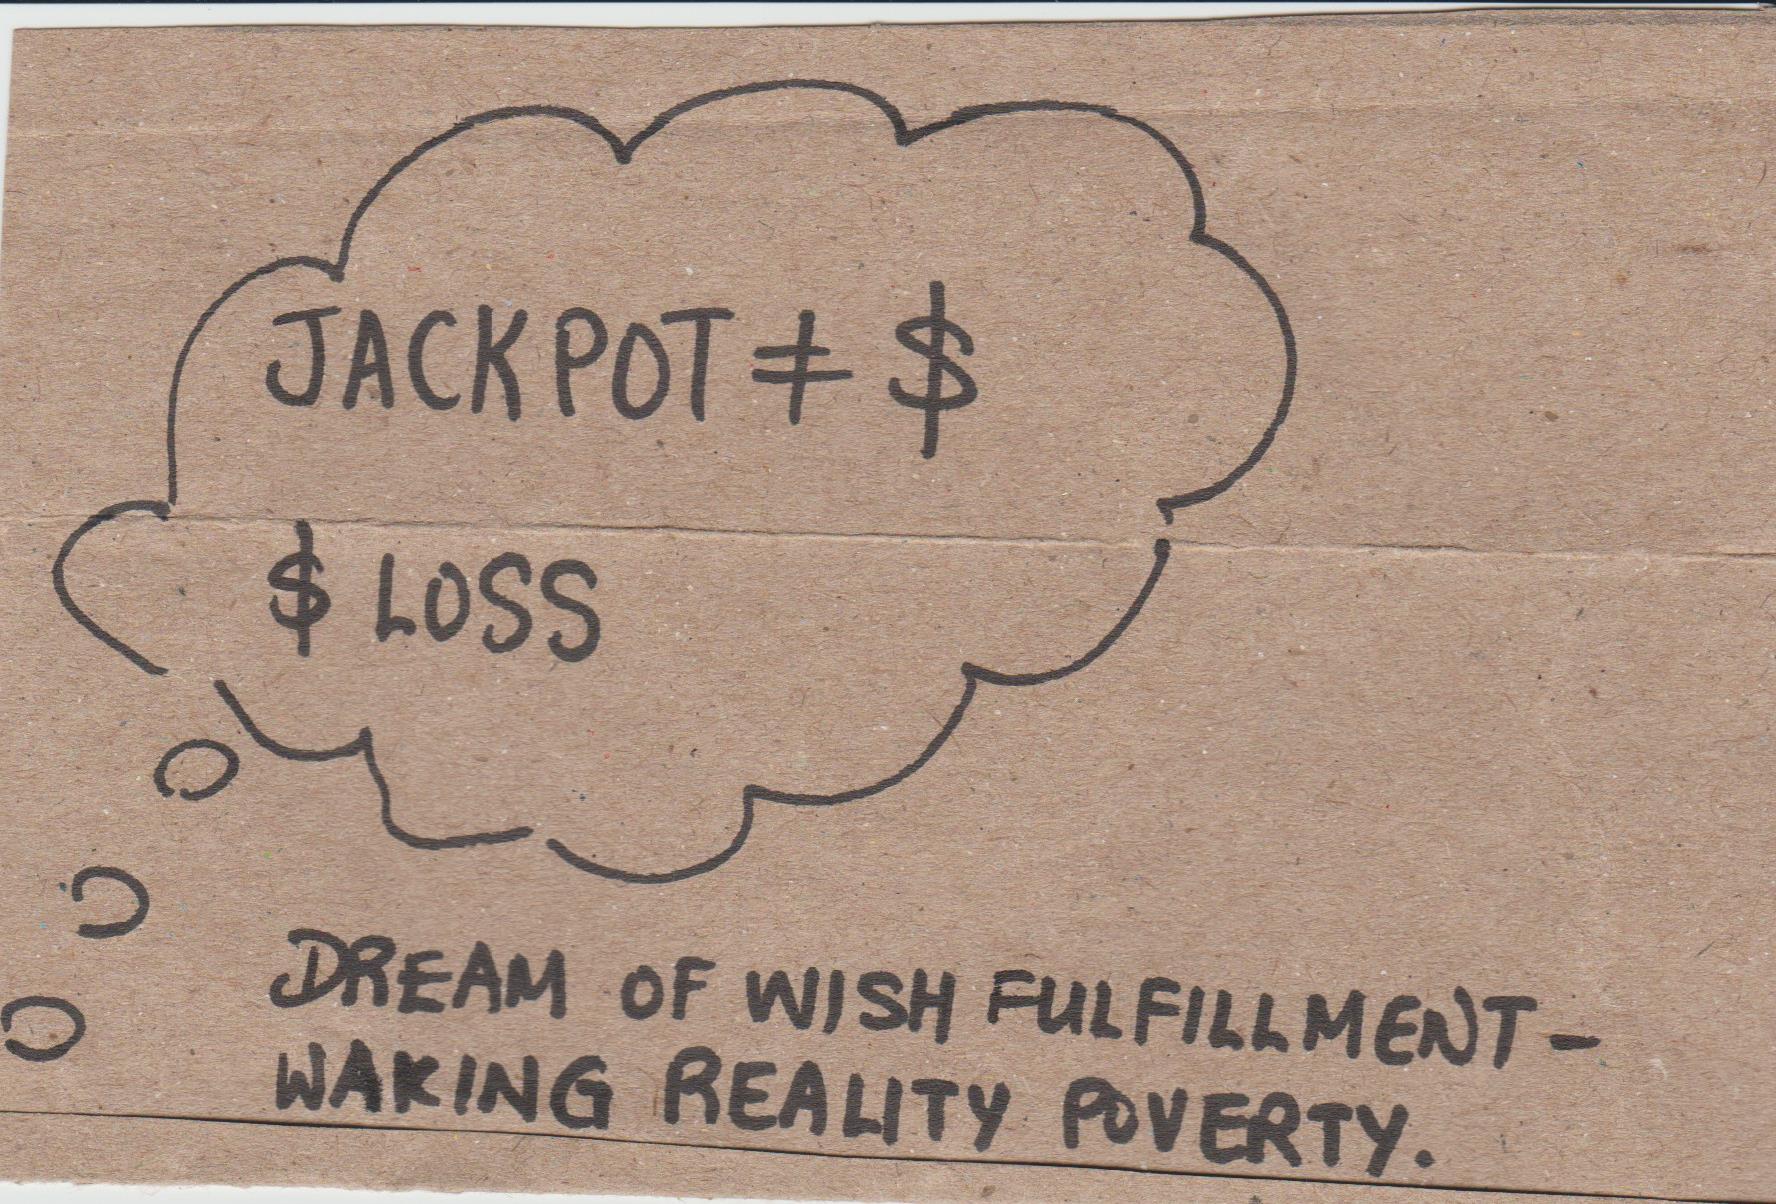 dreaming of winning jackpot on slot machine